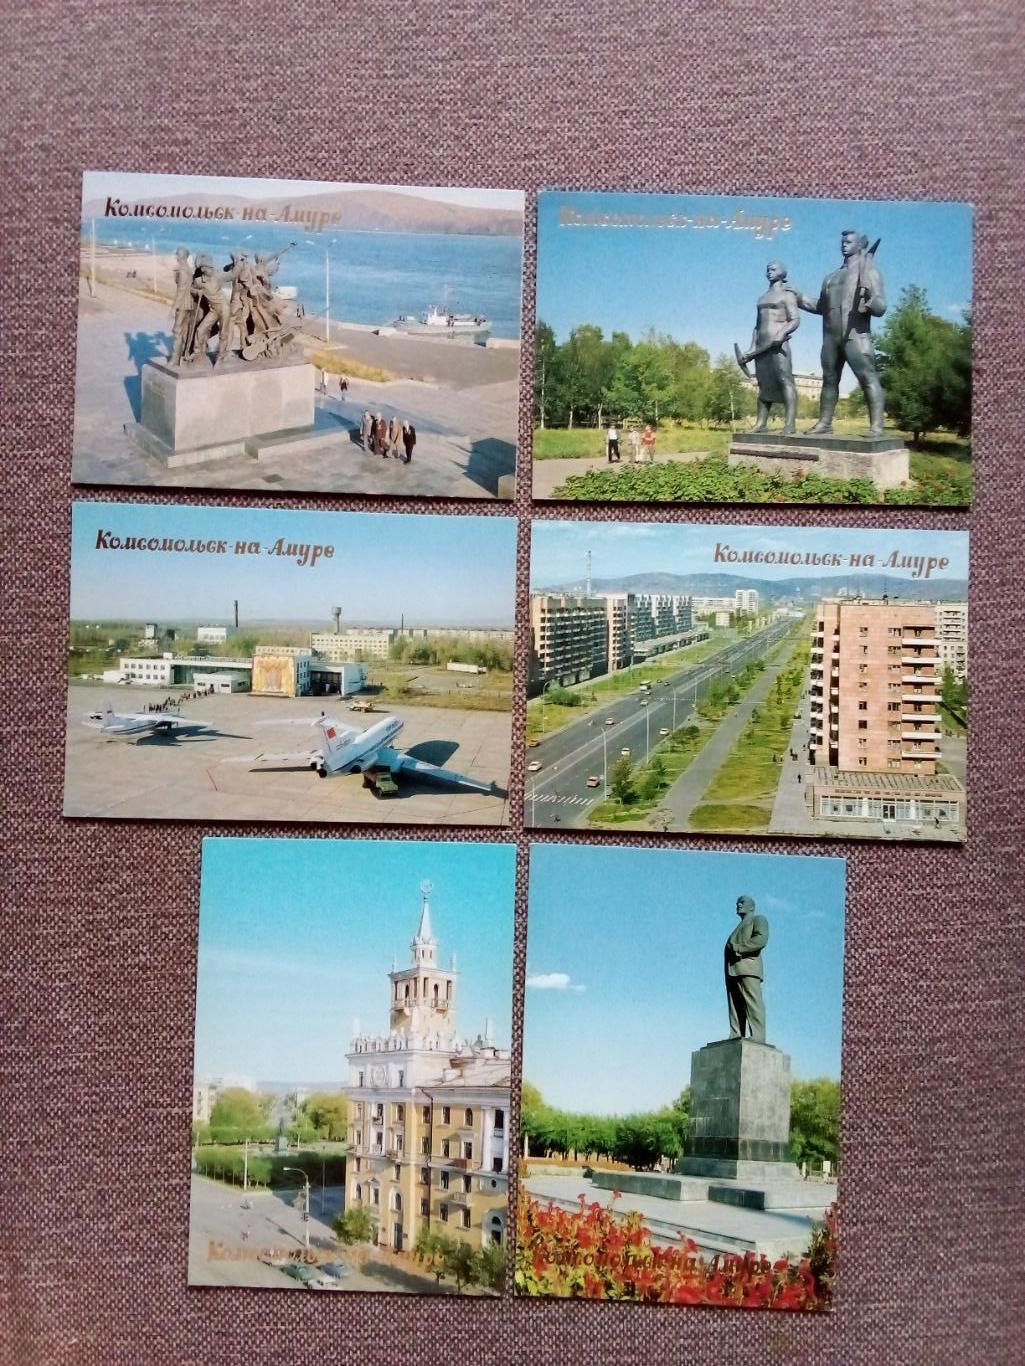 Города СССР : Комсомольск на Амуре 1990 г. полный набор - 18 открыток (Аэропорт) 5